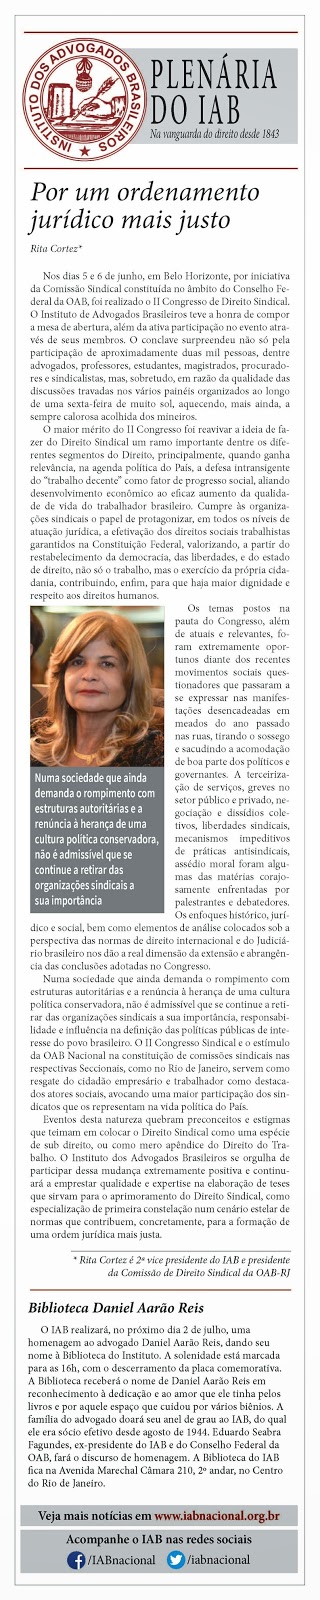 O Jornal do Commércio de hoje publicou artigo de Rita Cortez sobre o Direito Sindical na coluna semanal do IAB. Leia!